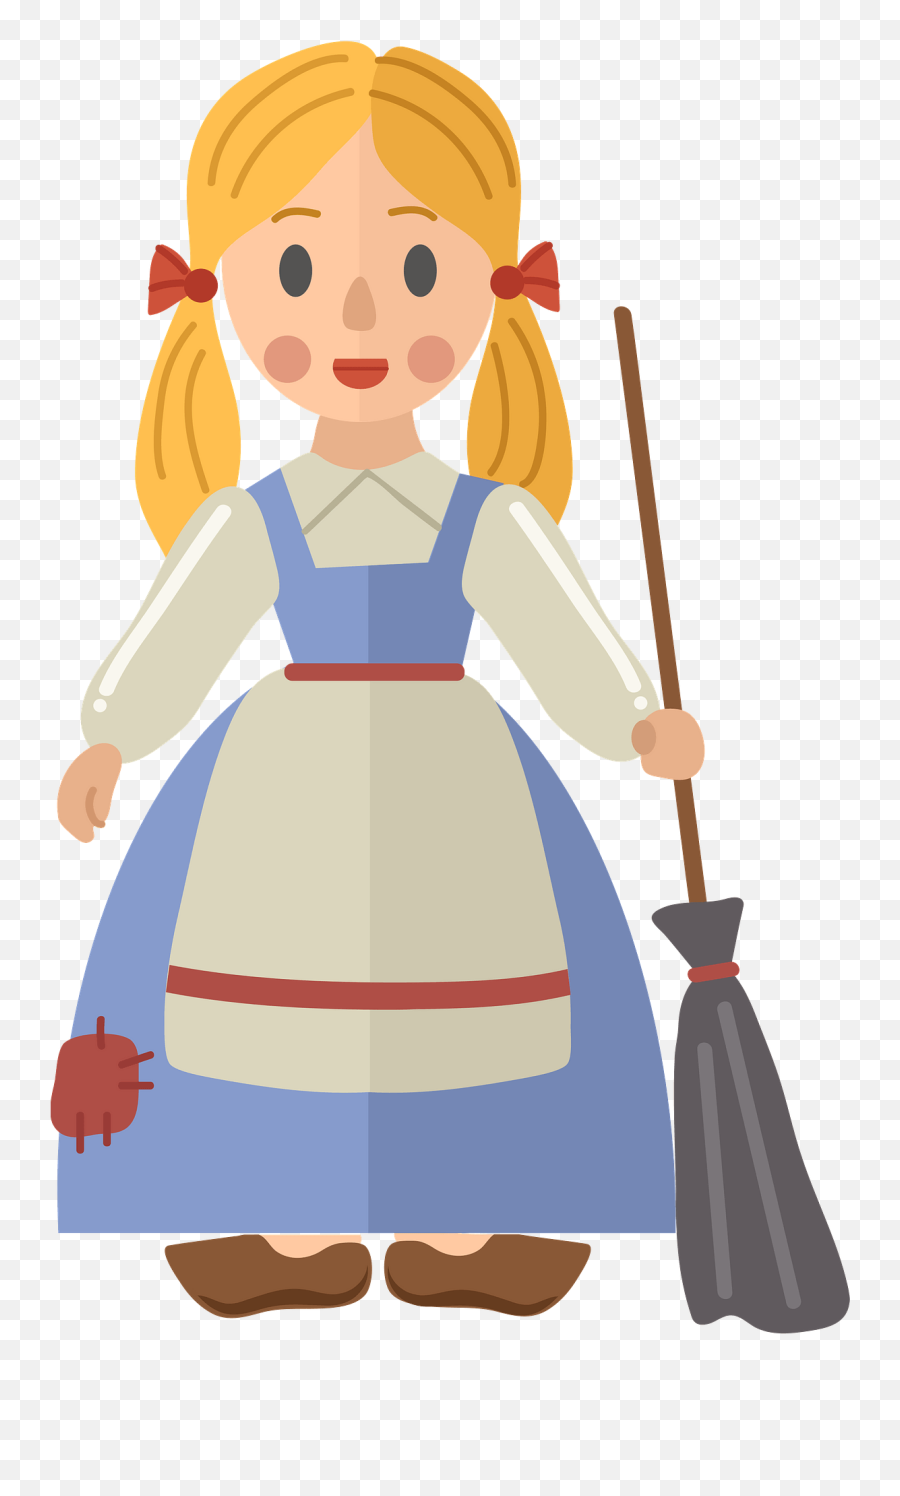 Cinderella Clipart Free Download Transparent Png Creazilla - Broom Emoji,Cinderella Clipart